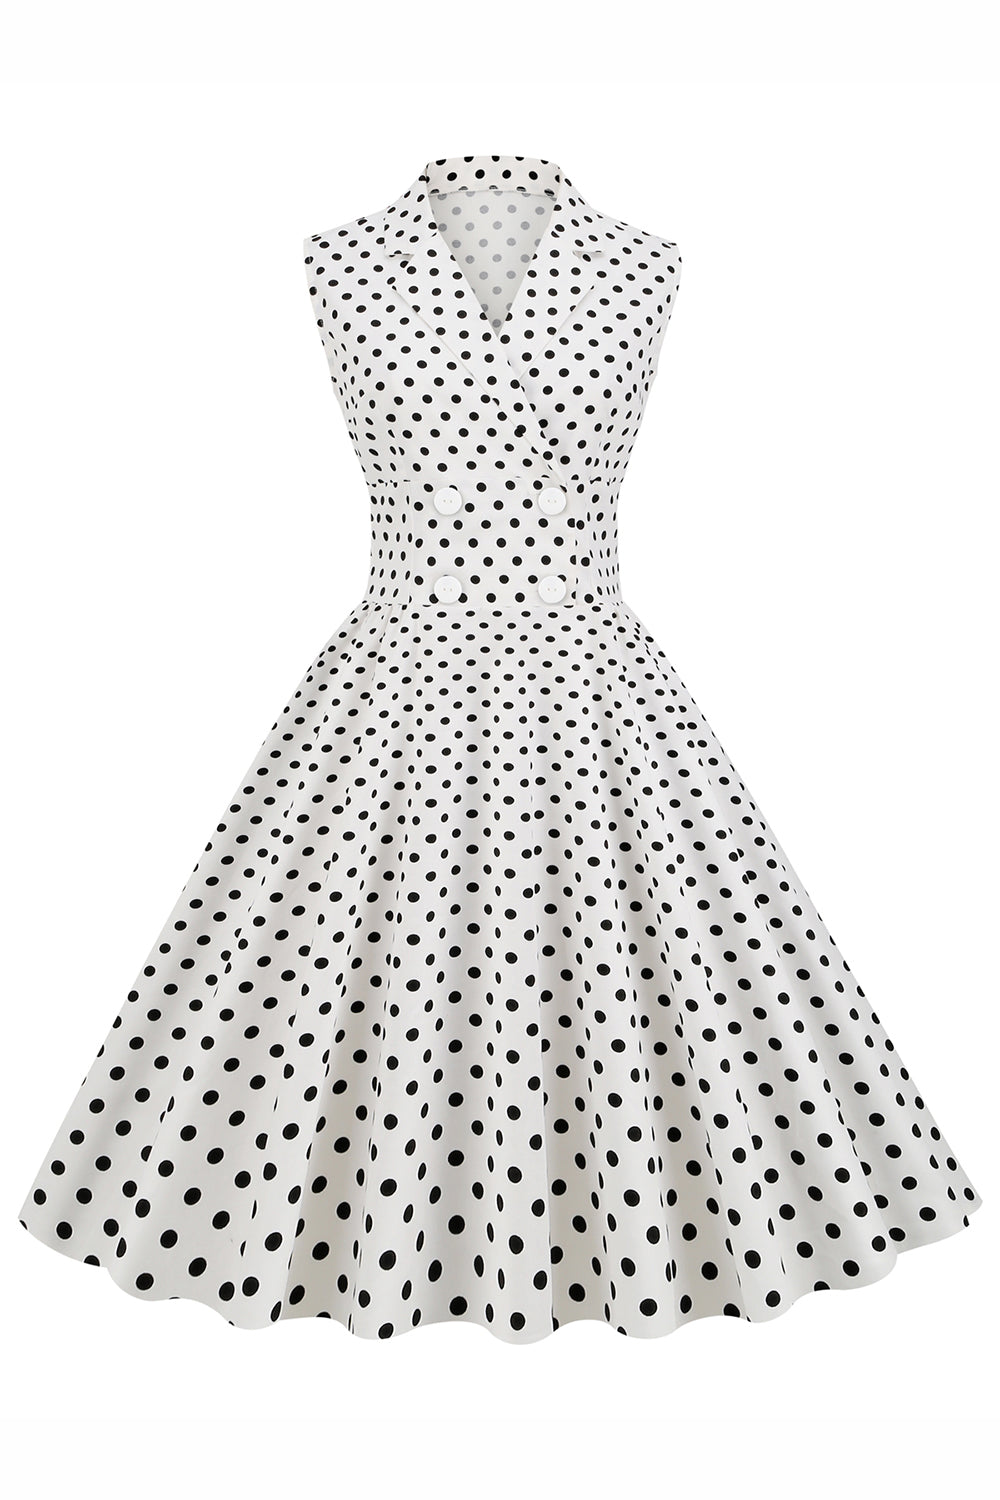 Weißes Polka Dots Revers Ausschnitt 1950er Jahre Kleid